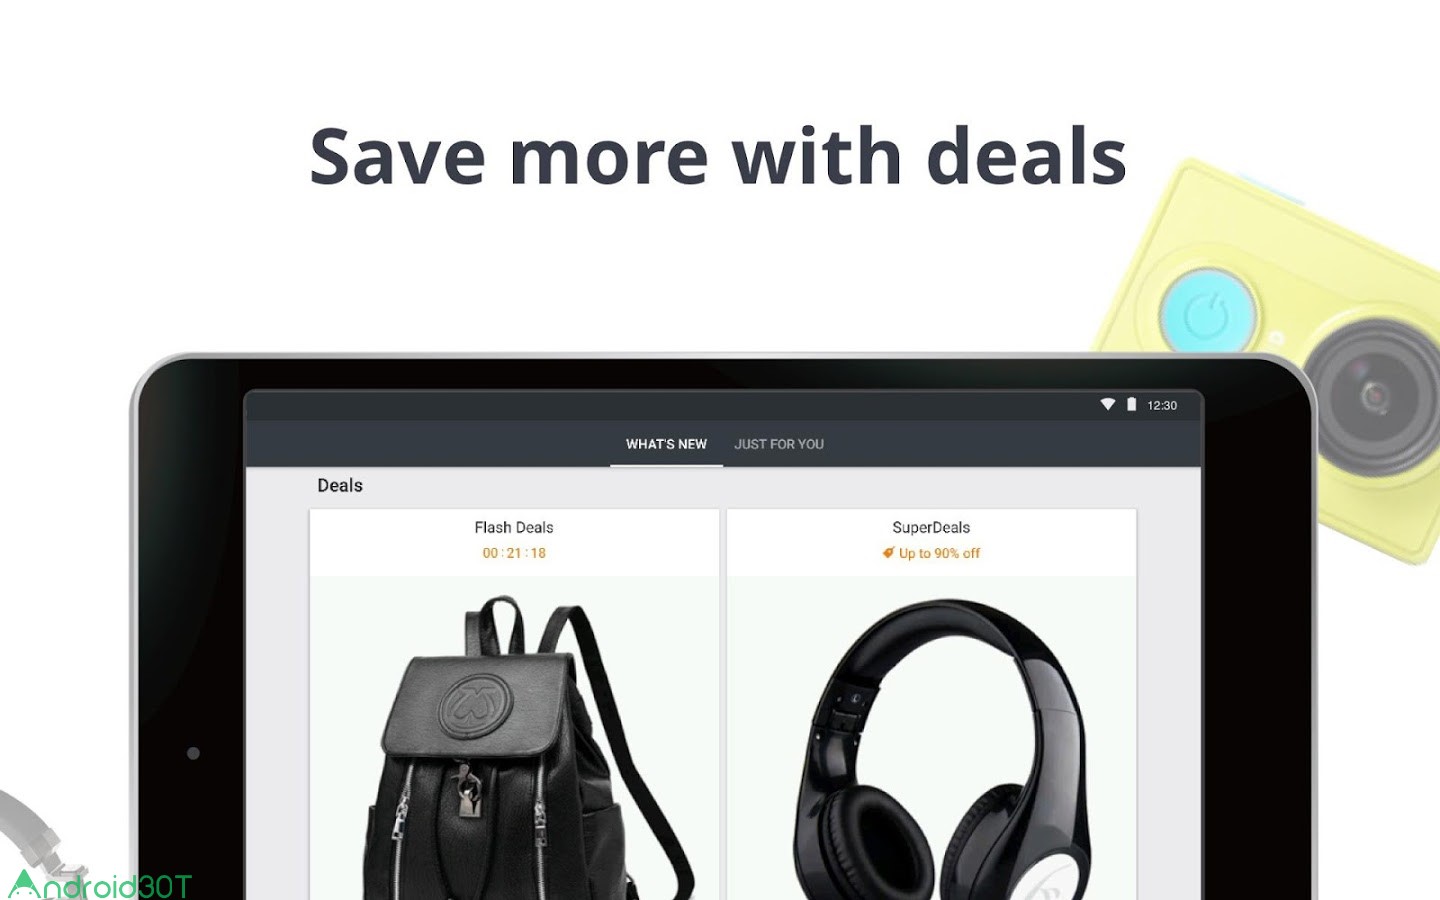 دانلود AliExpress Shopping App 8.55.1 – بازار جهانی خرید آنلاین اندروید